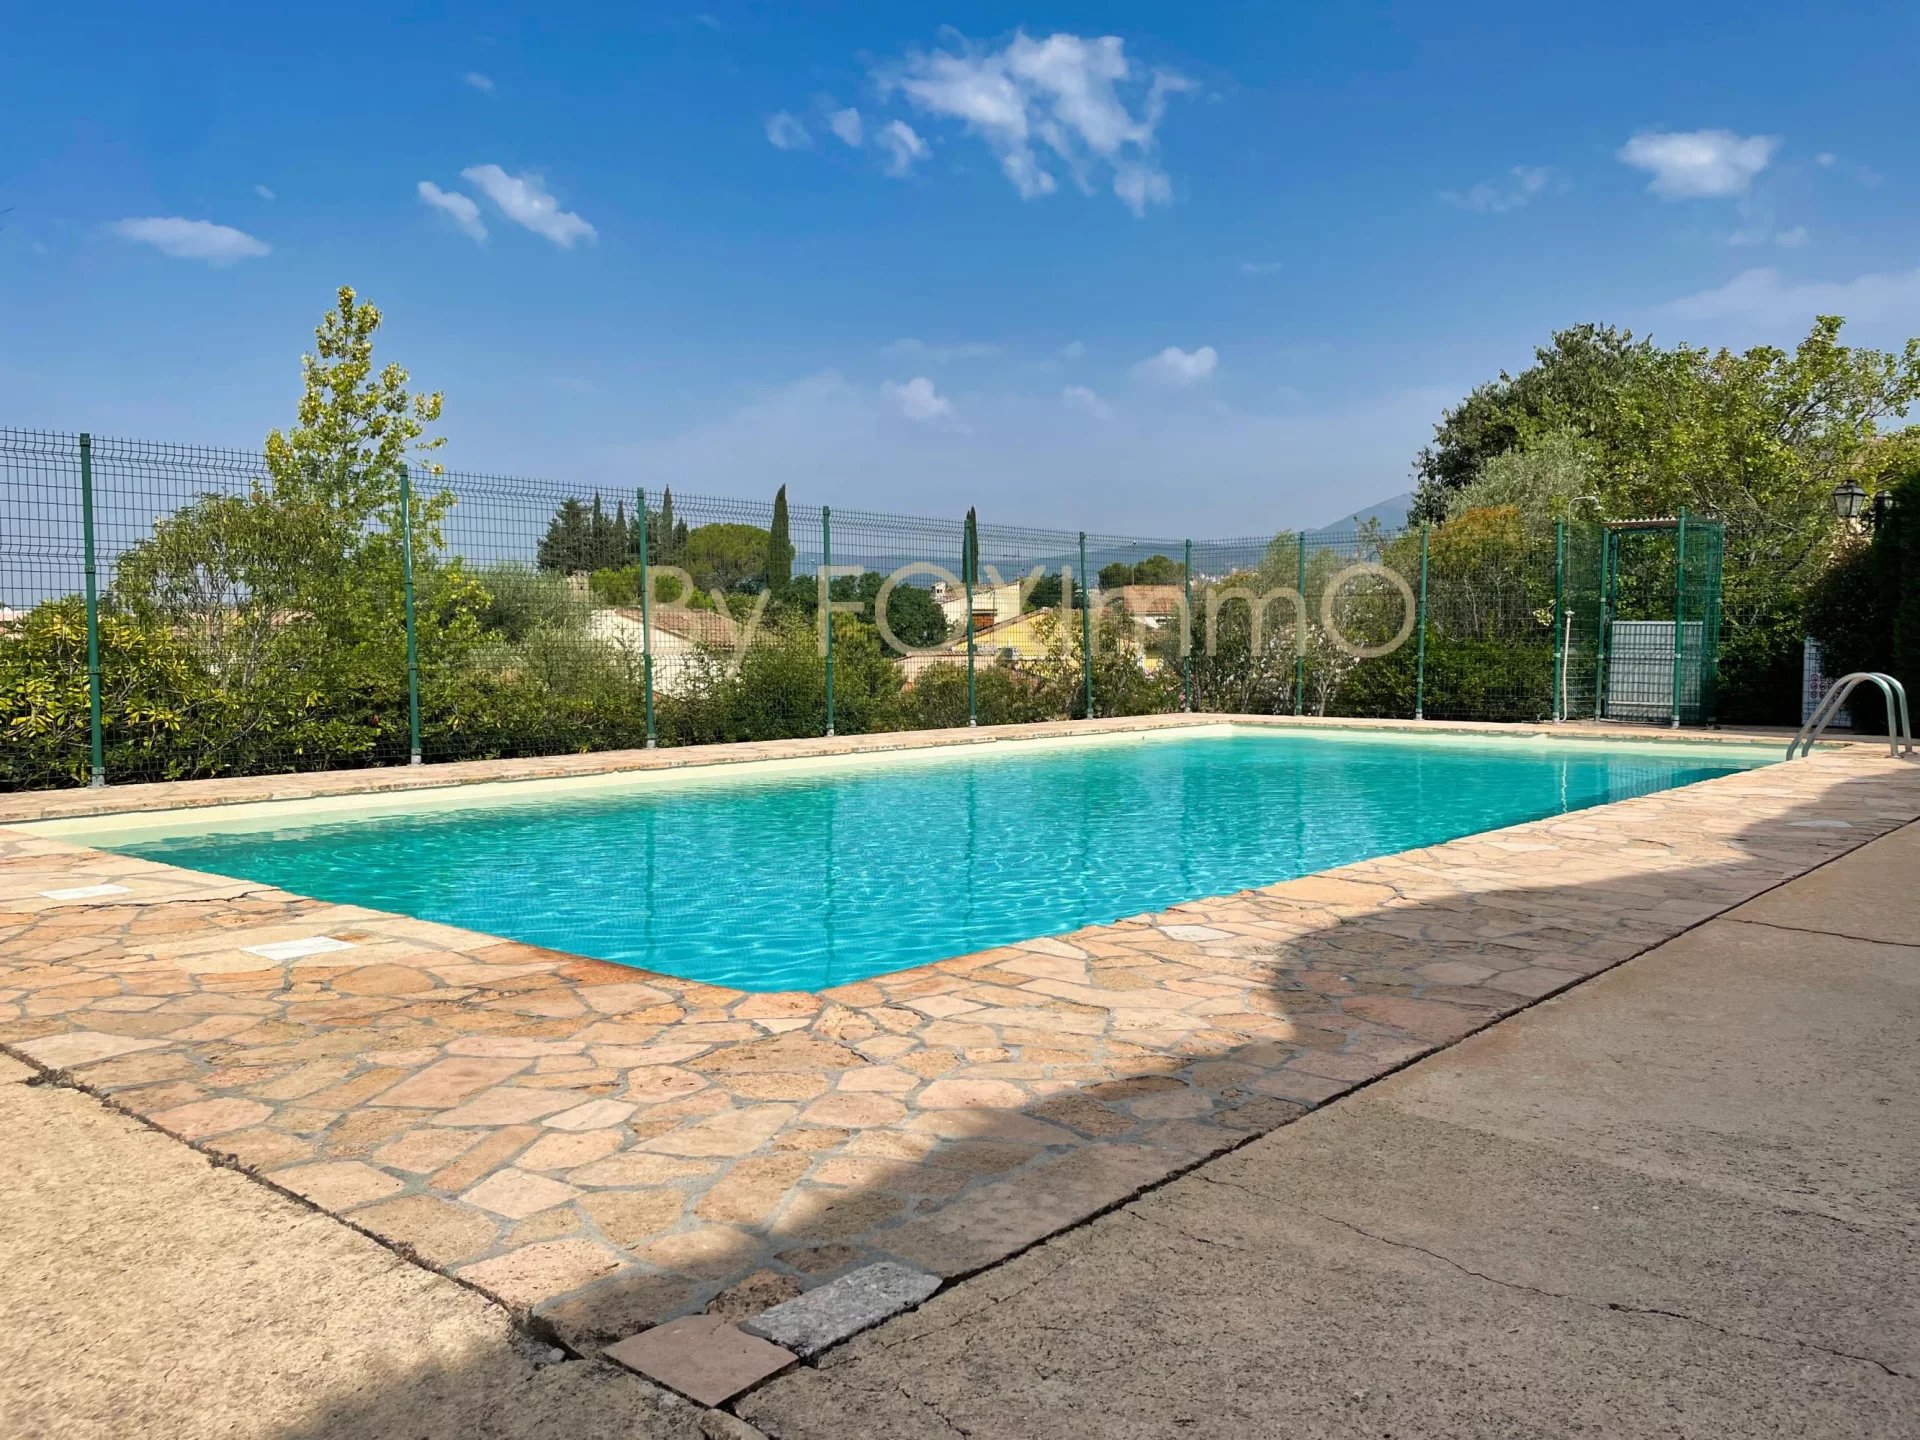 A vendre villa jumelée d'un côté au calme absolu avec piscine collective proche des commodités